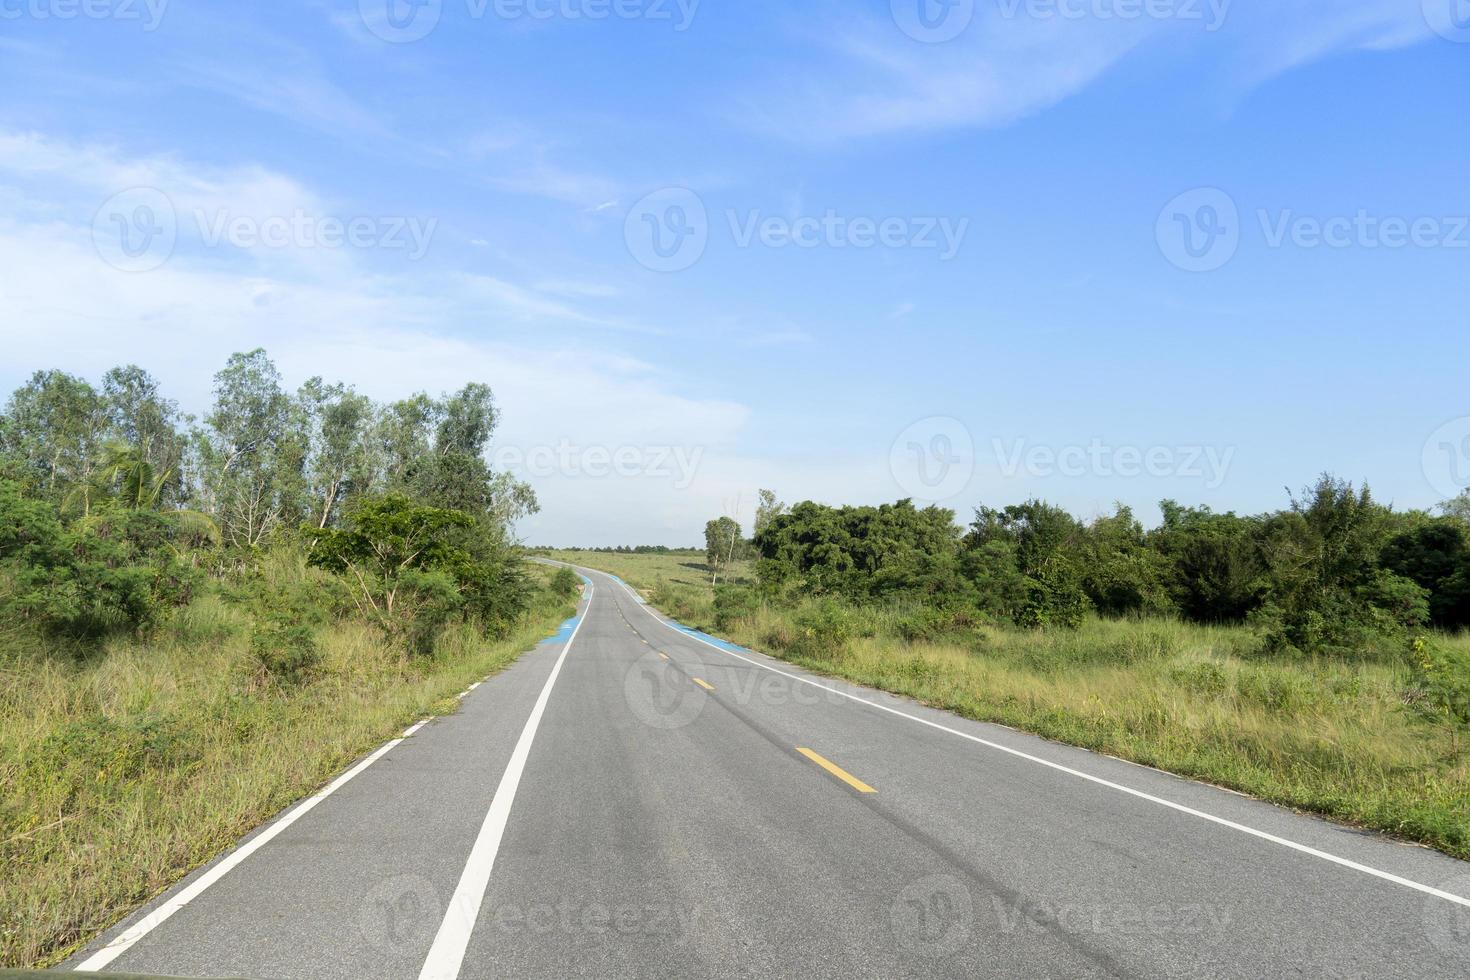 rechte weg naar voren van asfaltweg en blauwe fietspad schouderweg in thailand. naast de grond van groen gras en bomen. onder de blauwe lucht. foto